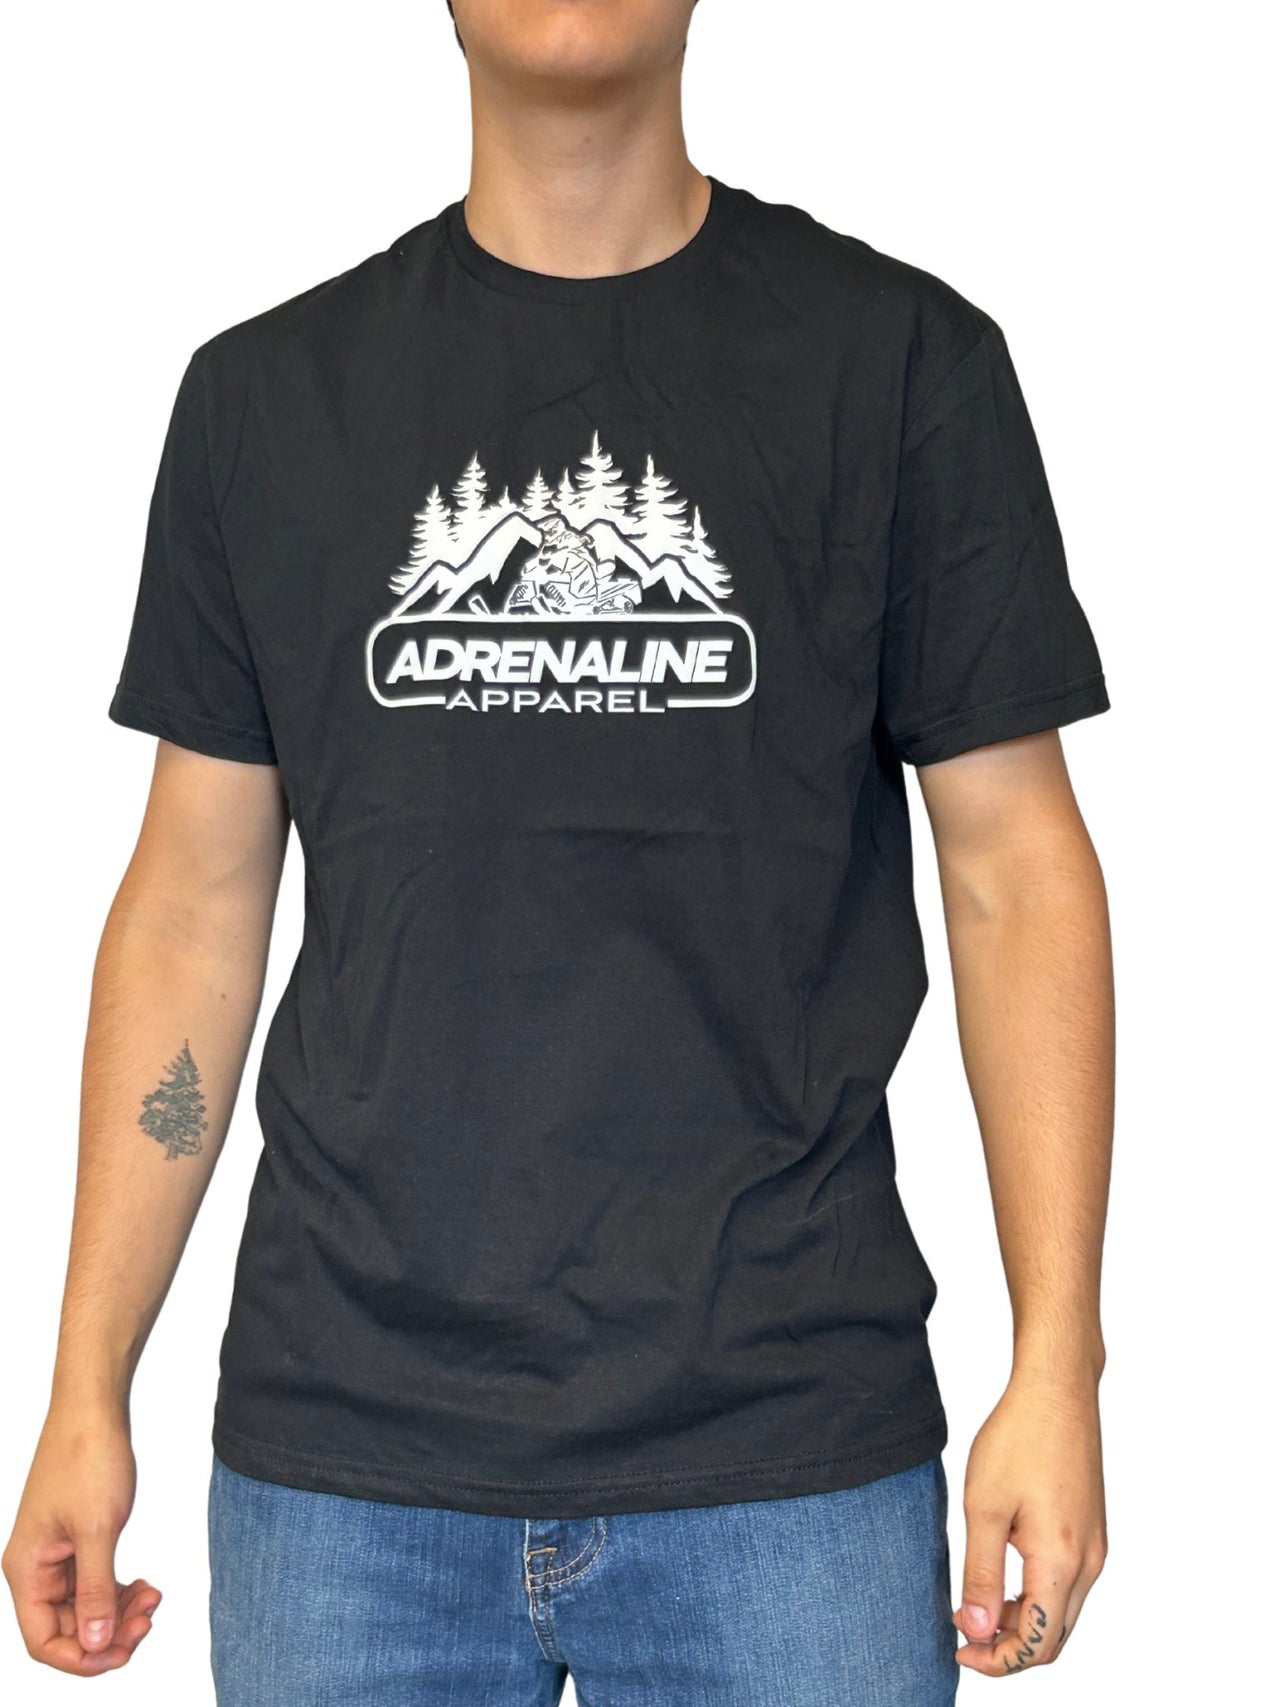 Skidoo Adrenaline tshirt - AdrenalineApparel